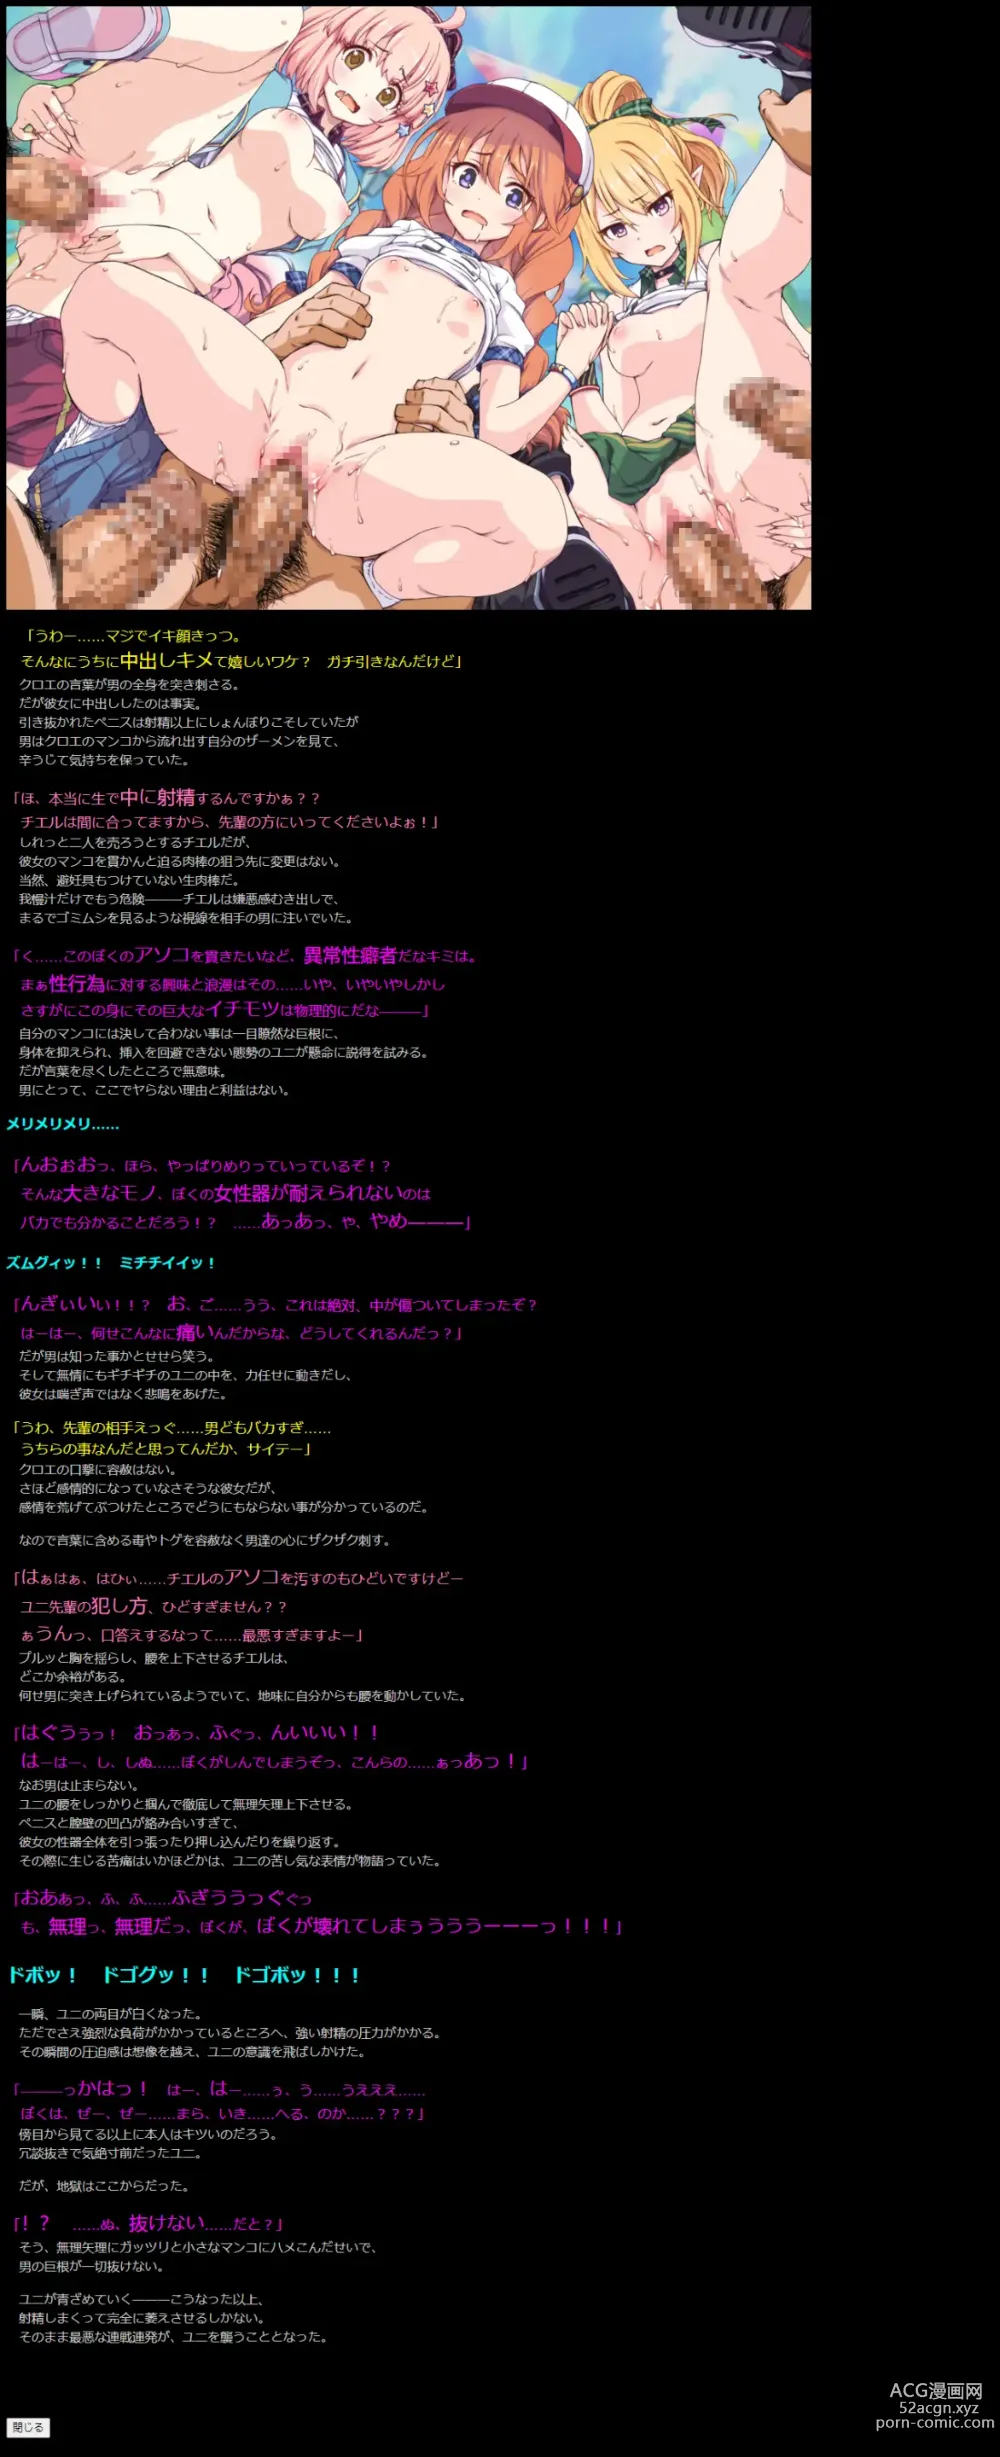 Page 13 of doujinshi Yuumei Chara Kannou Shousetsu CG Shuu No. 423!! Princess Connect Re:Dive 5 HaaHaa CG Shuu